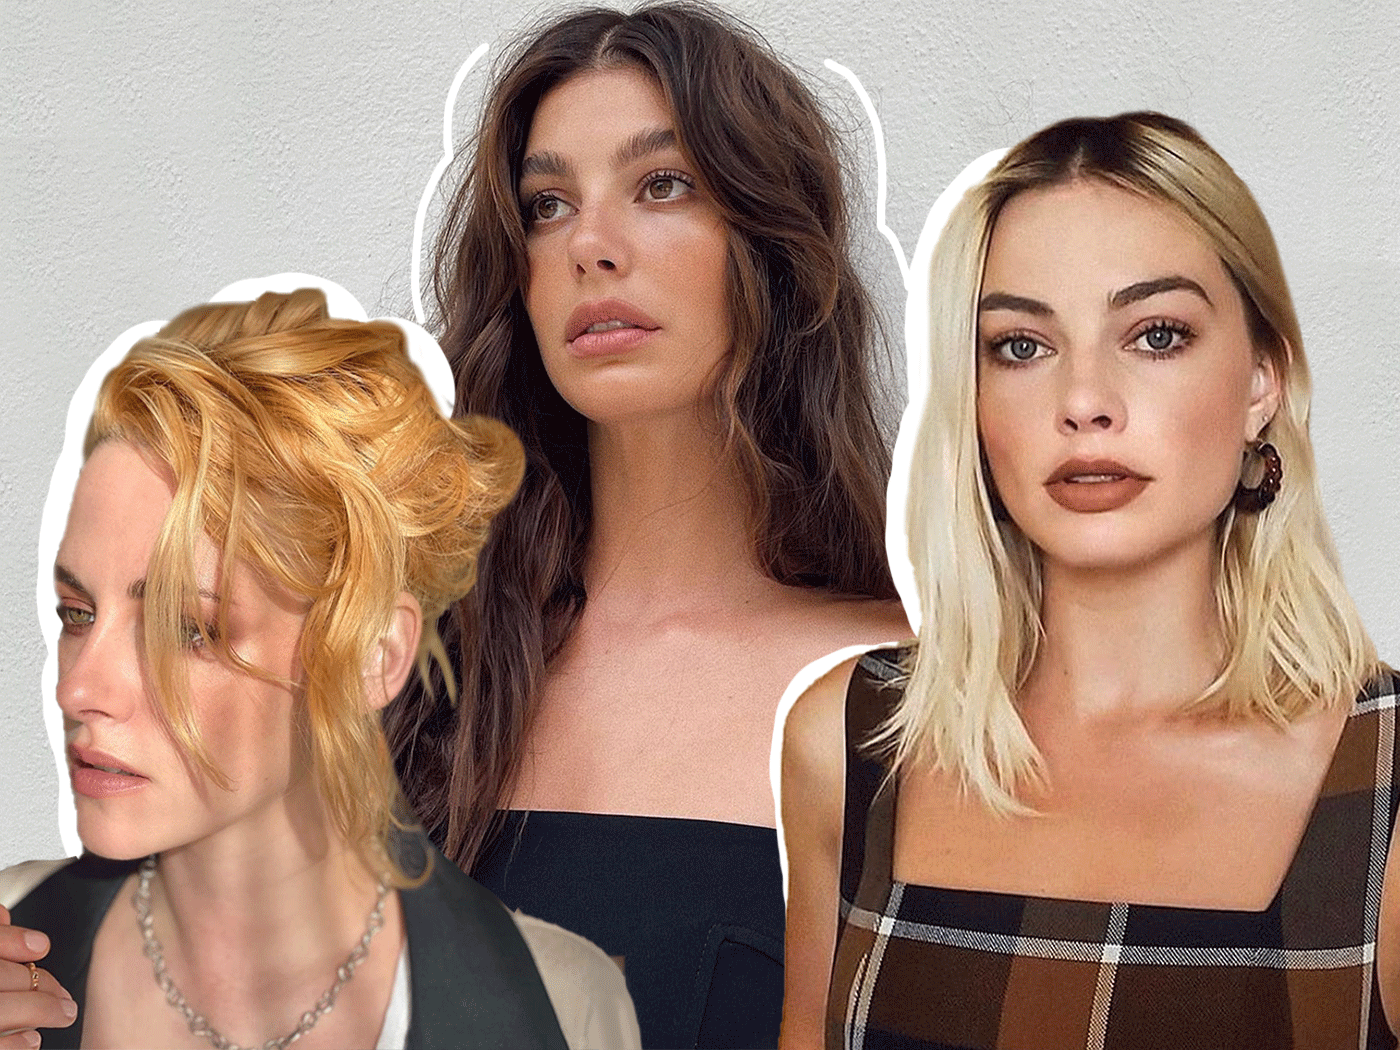 Οι celebrities haircolorists αποφάσισαν: Αυτά είναι τα μεγαλύτερα trends της σεζόν